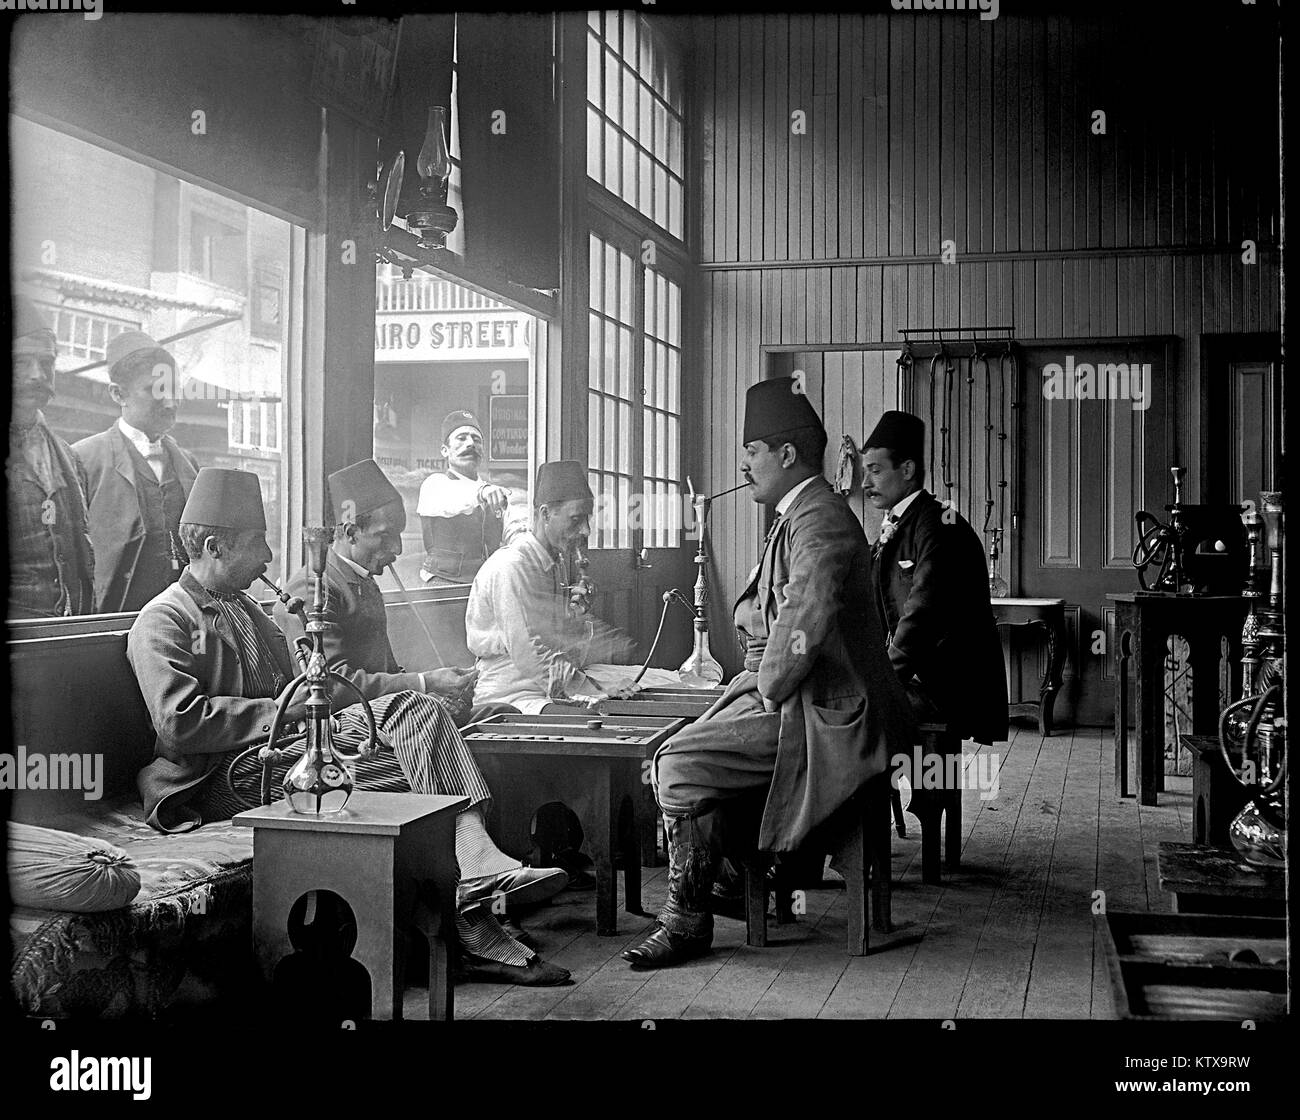 Fumare narghilè tubi a La California Midwinter Esposizione Internazionale. Questa fiera mondiale si è tenuto a San Francisco, California dal 27 gennaio al 5 luglio 1894. Immagine dalla fotocamera originale negativo di vetro. Foto Stock